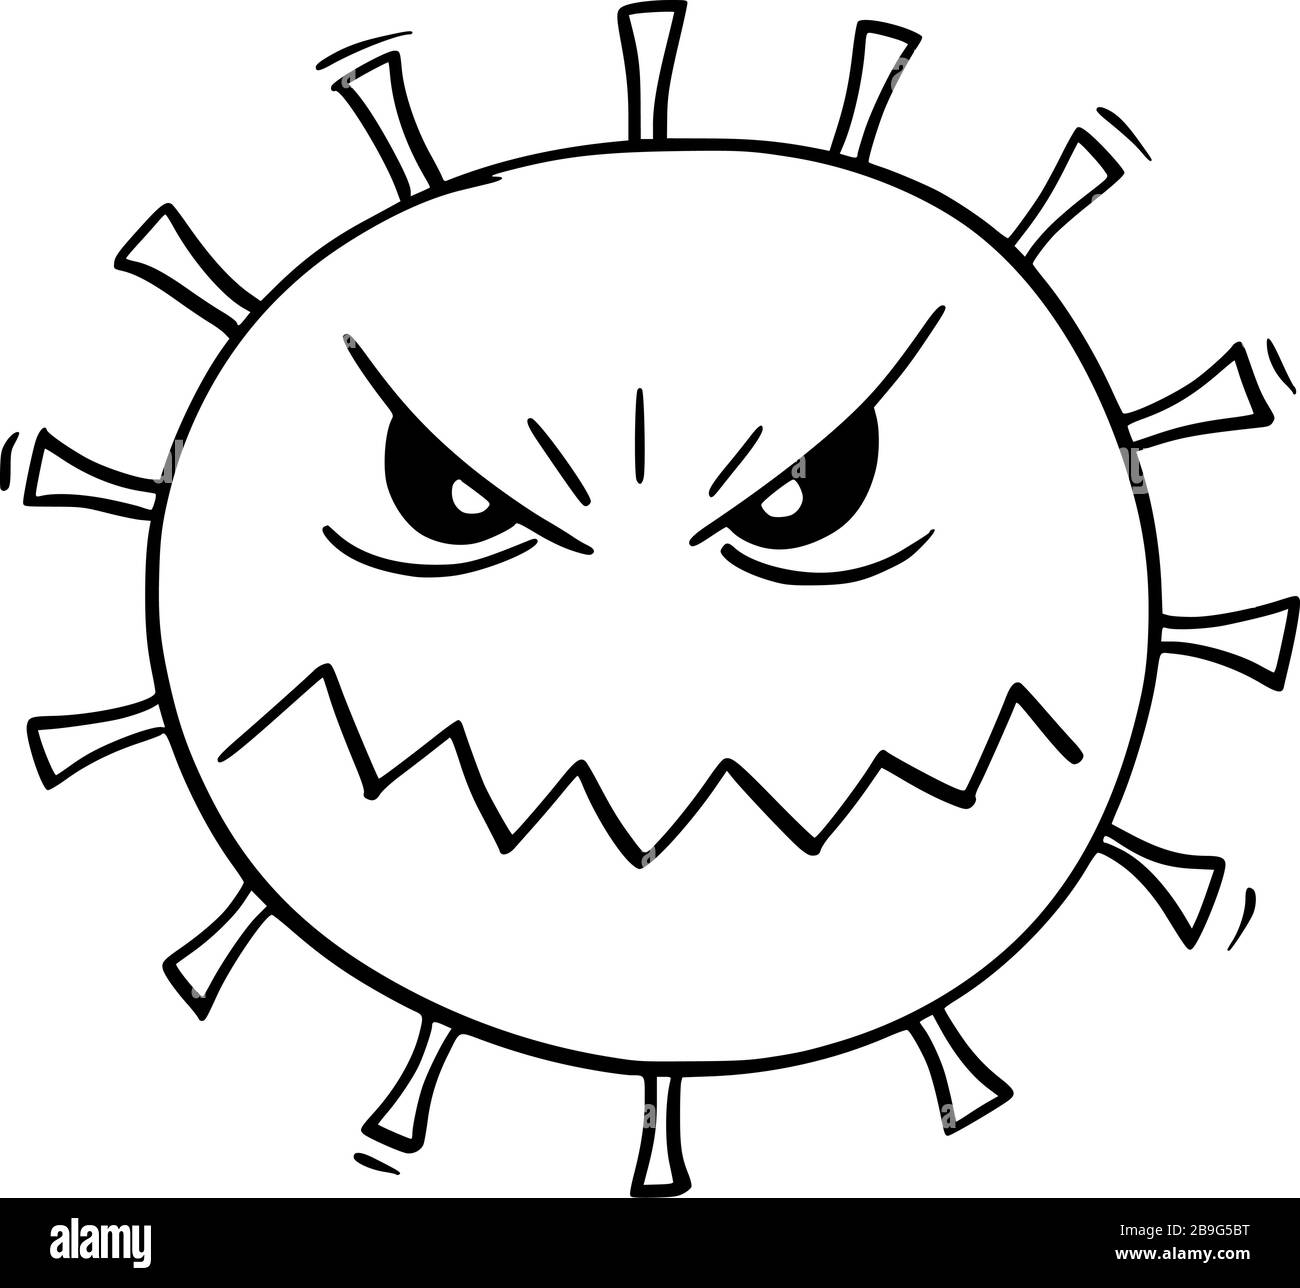 Vektor-Cartoon-Illustration von Coronavirus Covid-19 oder Virus oder Bakterien oder pathogenes gefährliches Monster. Stock Vektor